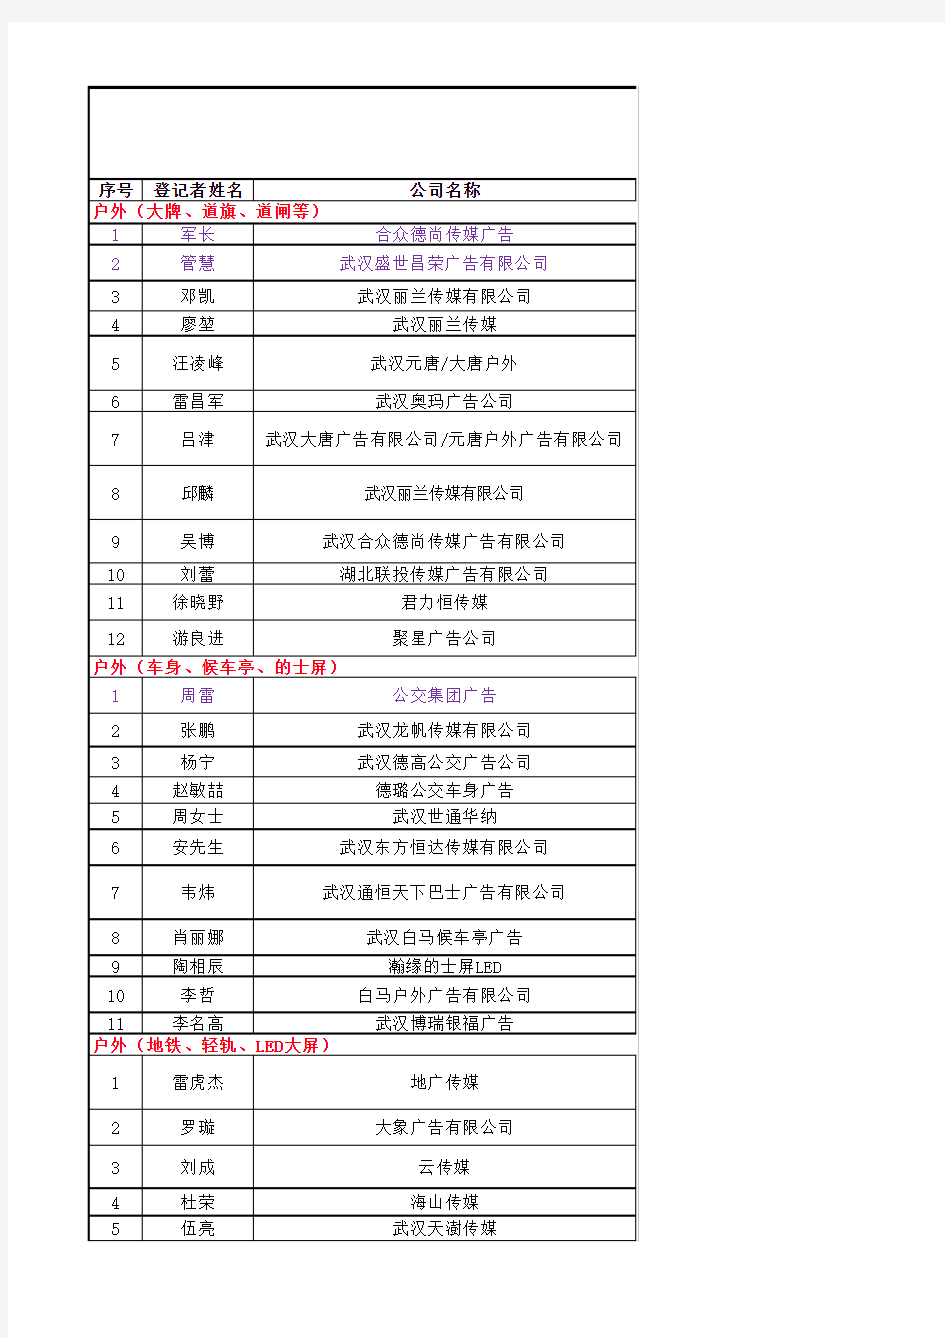 武汉房地产行业第三合作方广告媒体资源整合表